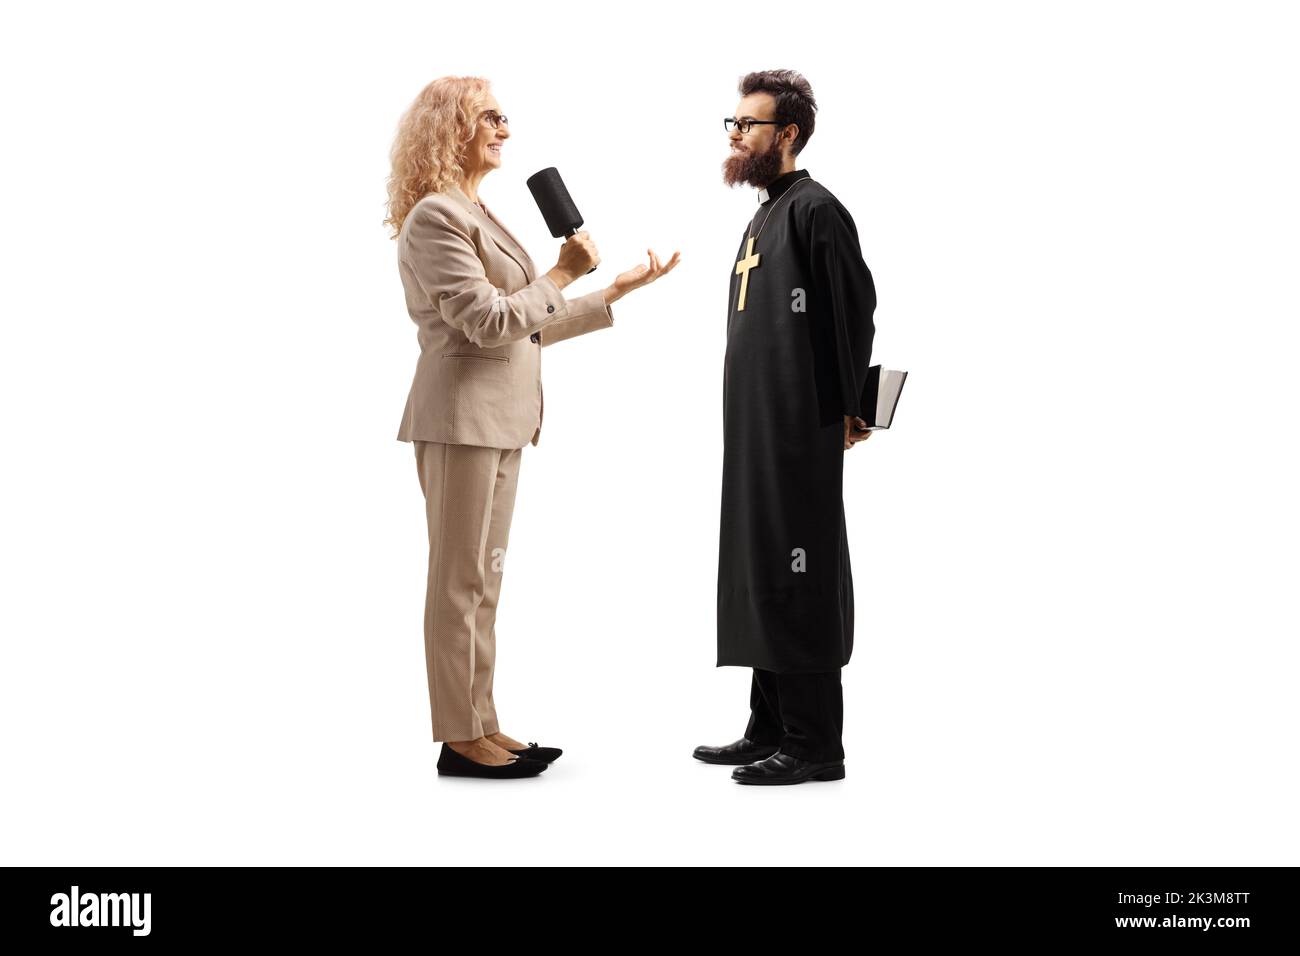 Journalistin im Gespräch mit einem katholischen Priester isoliert auf weißem Hintergrund Stockfoto